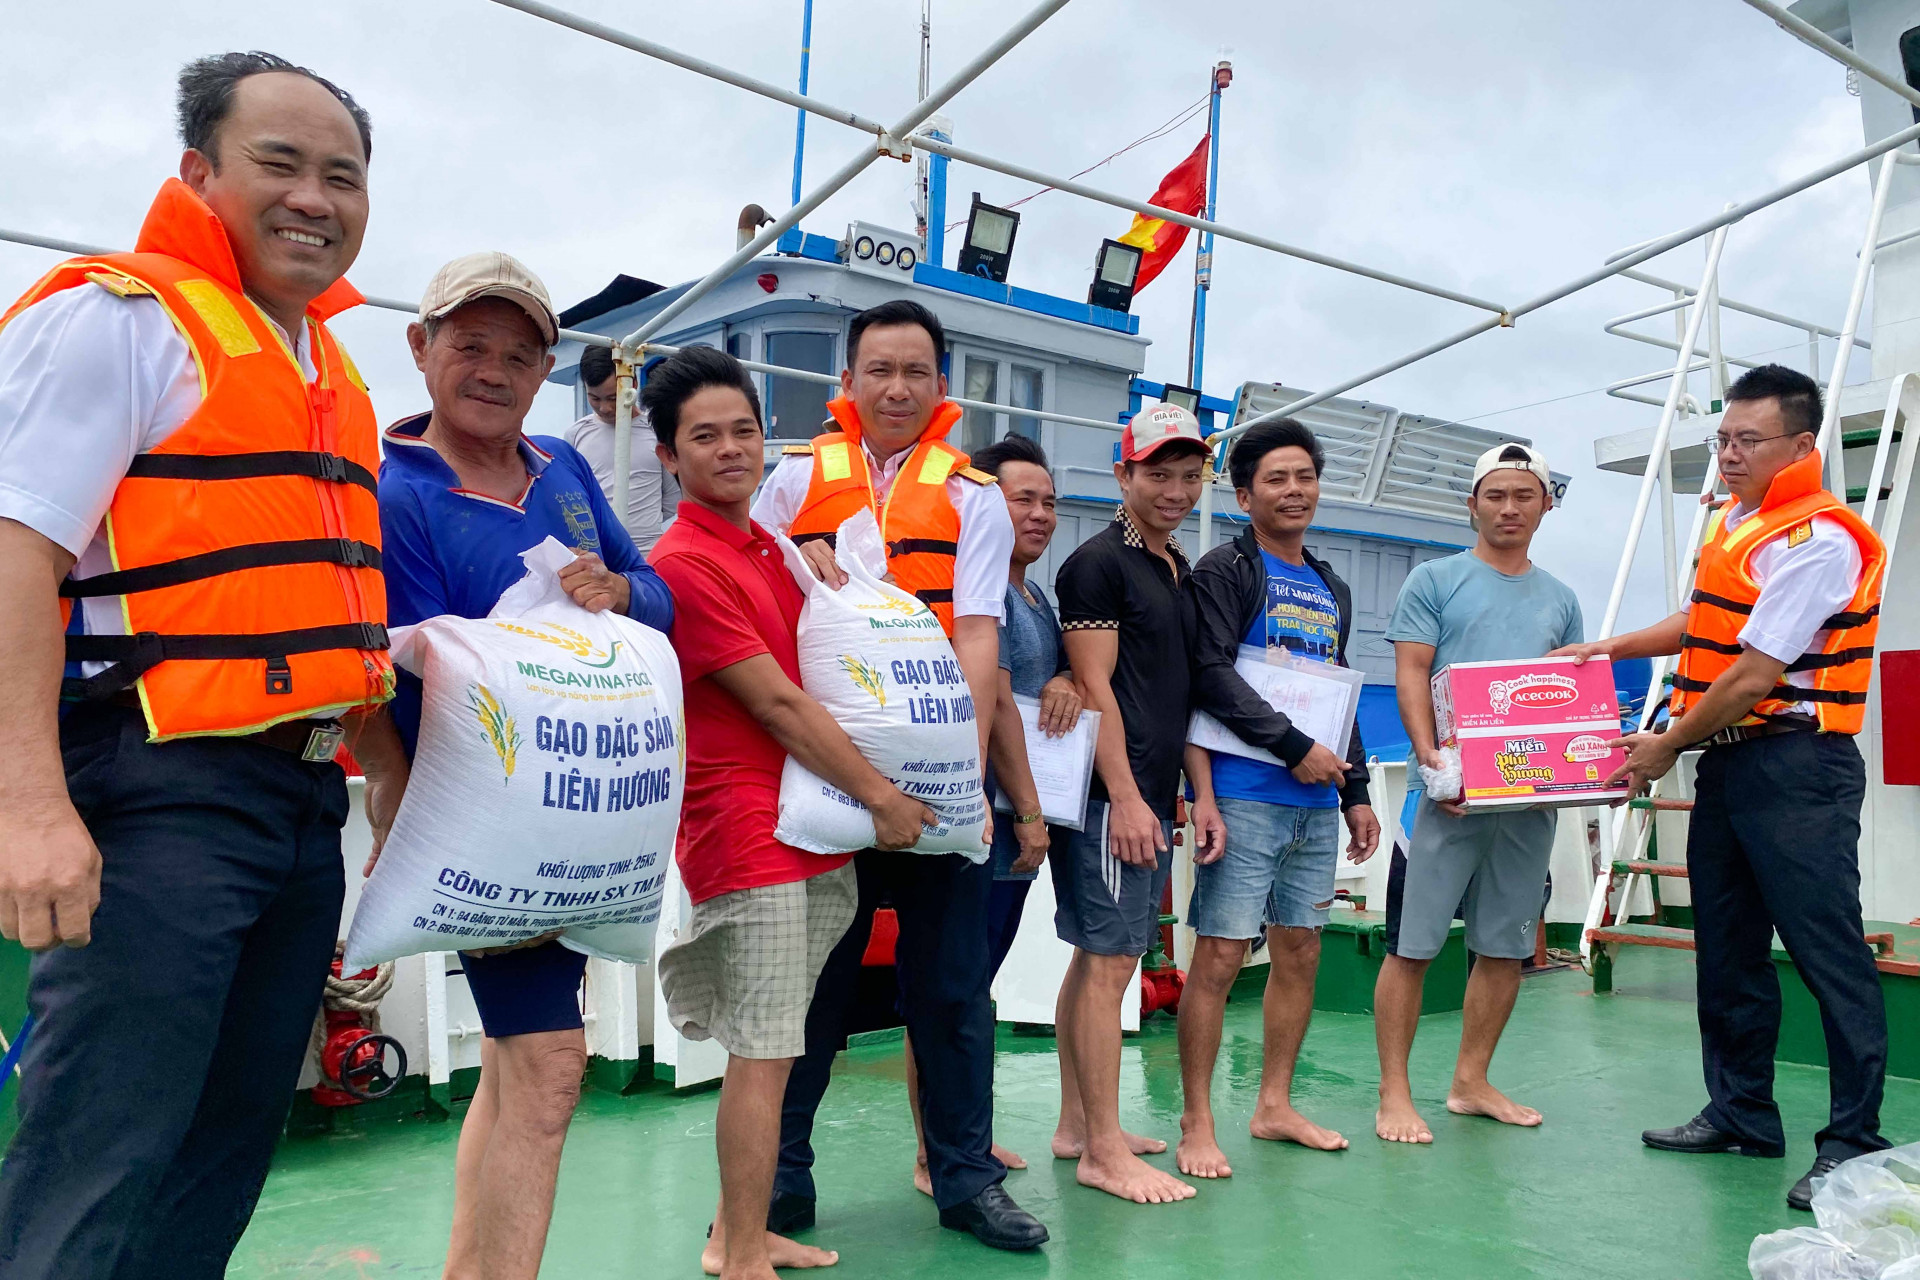 Cán bộ, thủy thủ Tàu 404 tiếp cận và hỗ trợ lương thực, thực phẩm cho tàu cá BTH96583TS của ngư dân tỉnh Bình Thuận đang khai thác hải sản ở Trường Sa.